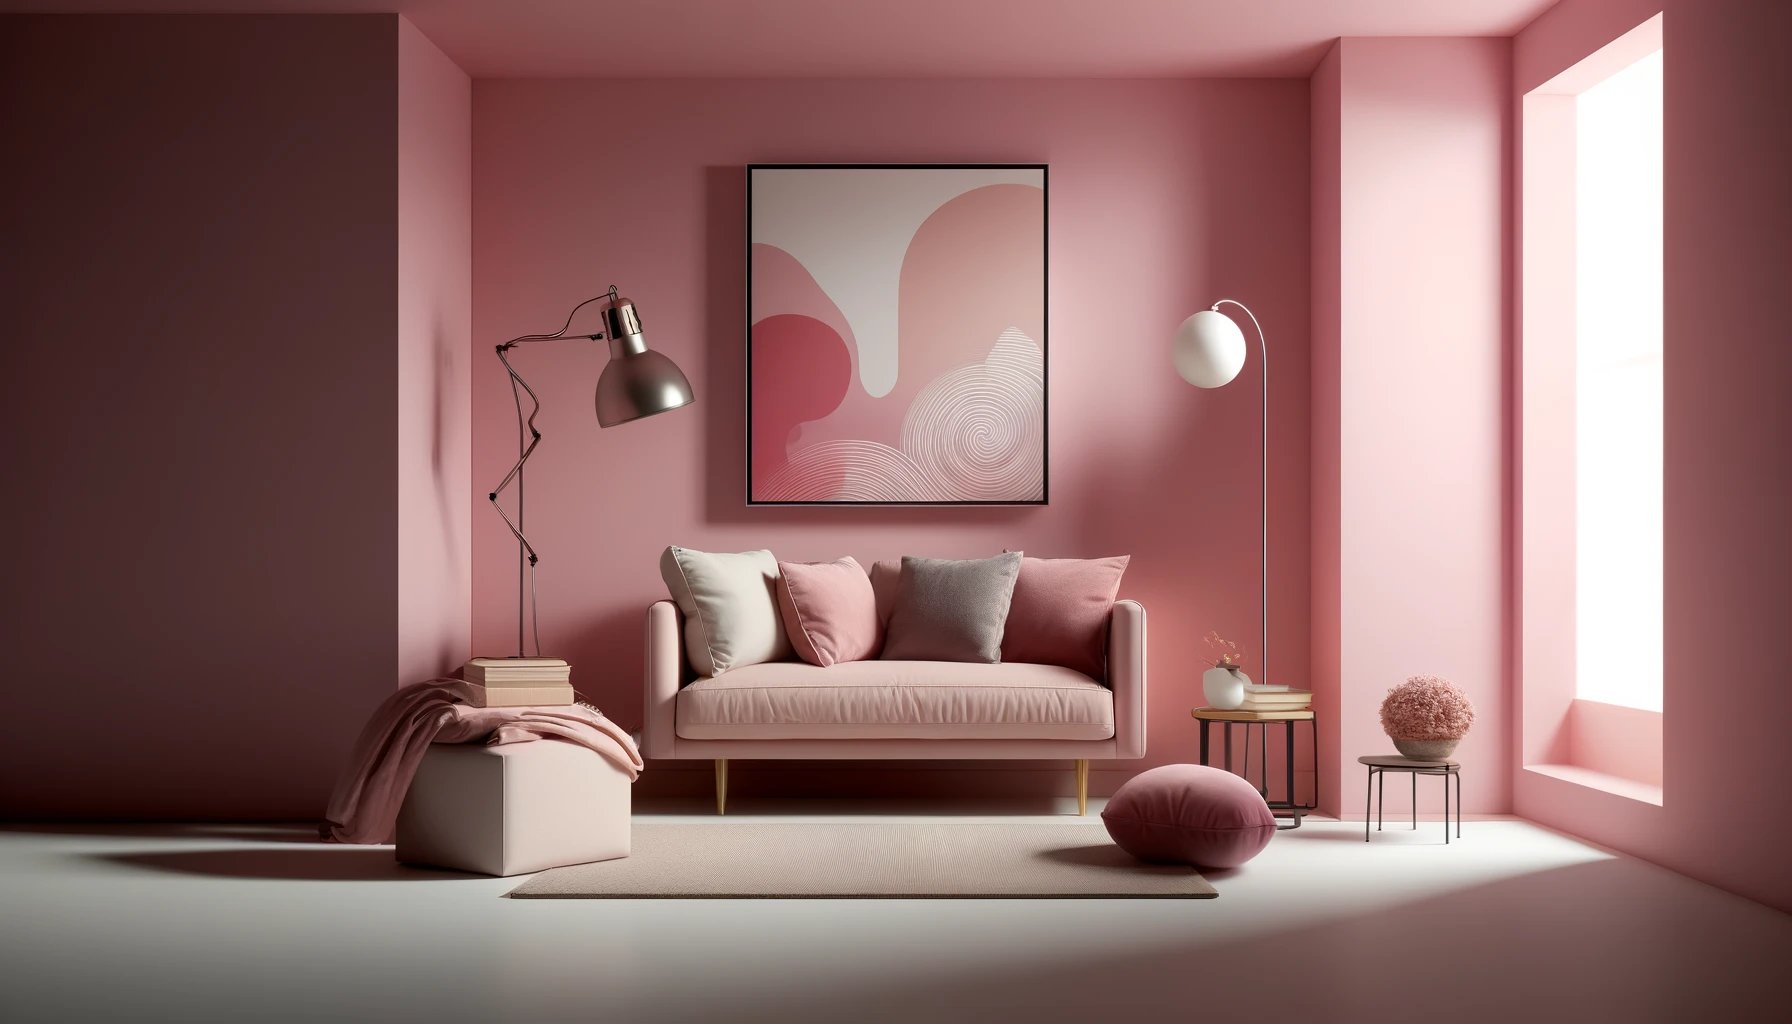 efectos emocionales del color rosa en interiores